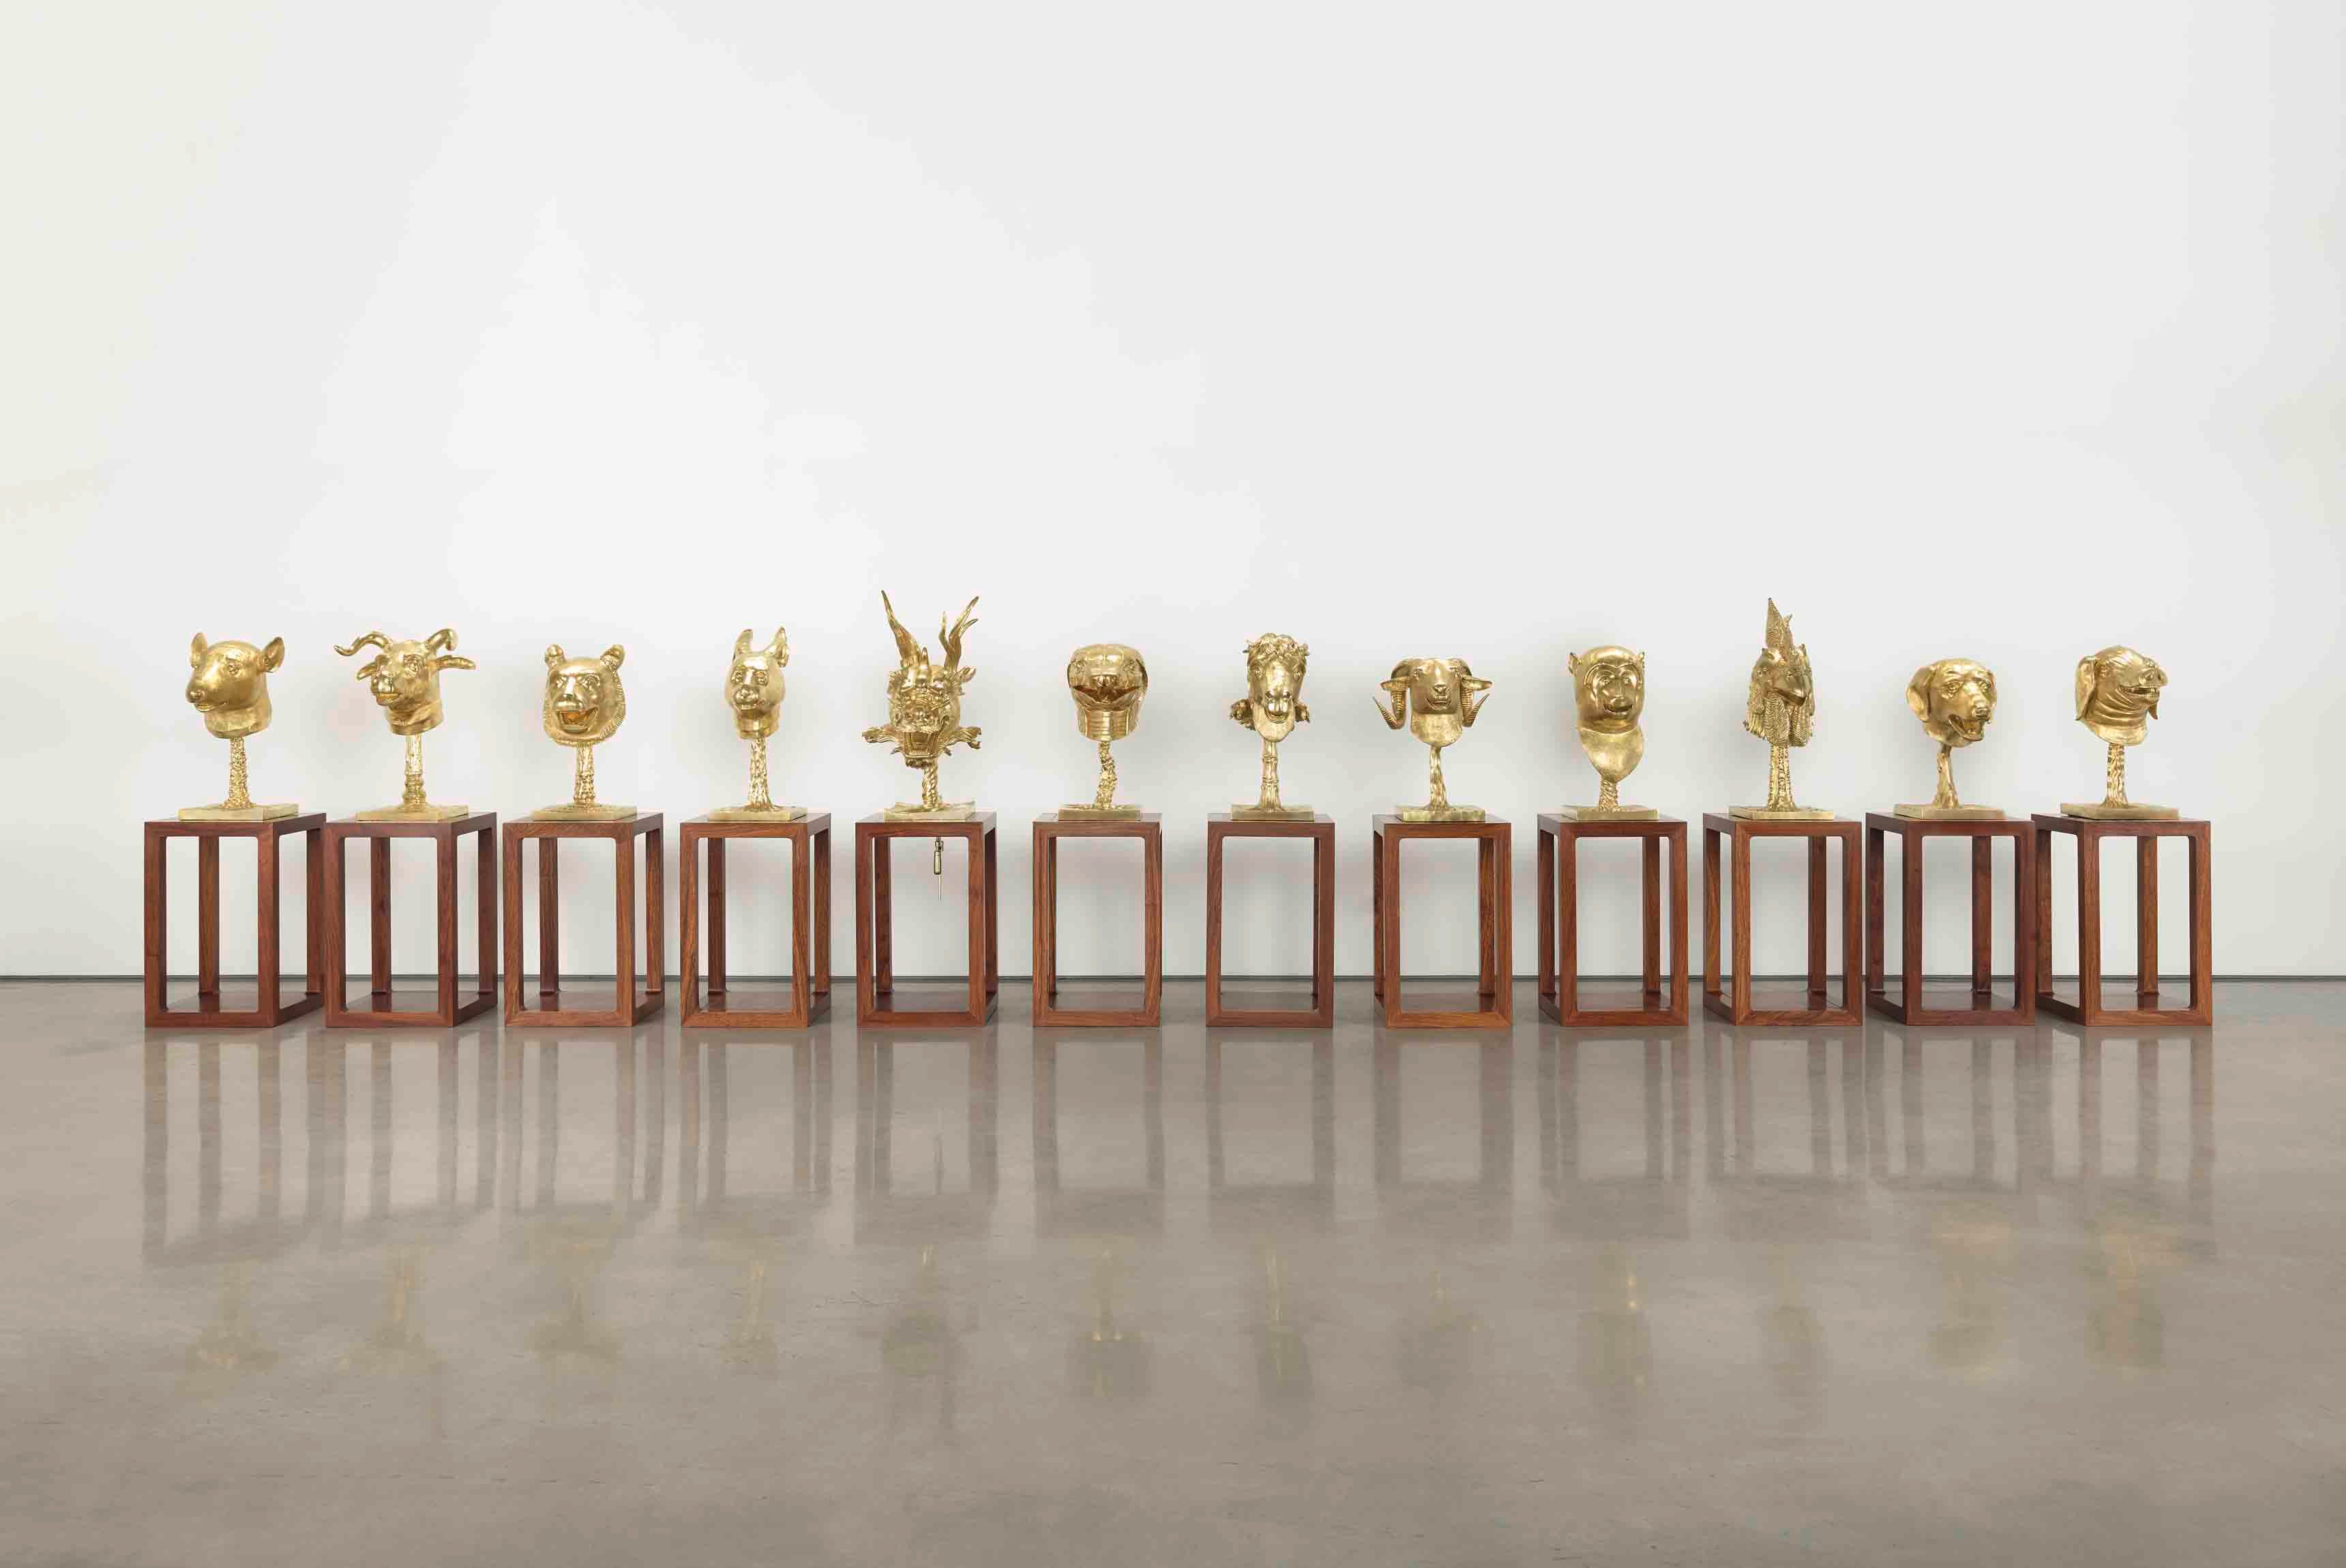 Ai Weiwei, “Circle of Animals” [Cercle d'animaux] (2012. Bronze doré, 12 pièces, dimensions variables. © Image courtesy Ai Weiwei Studio